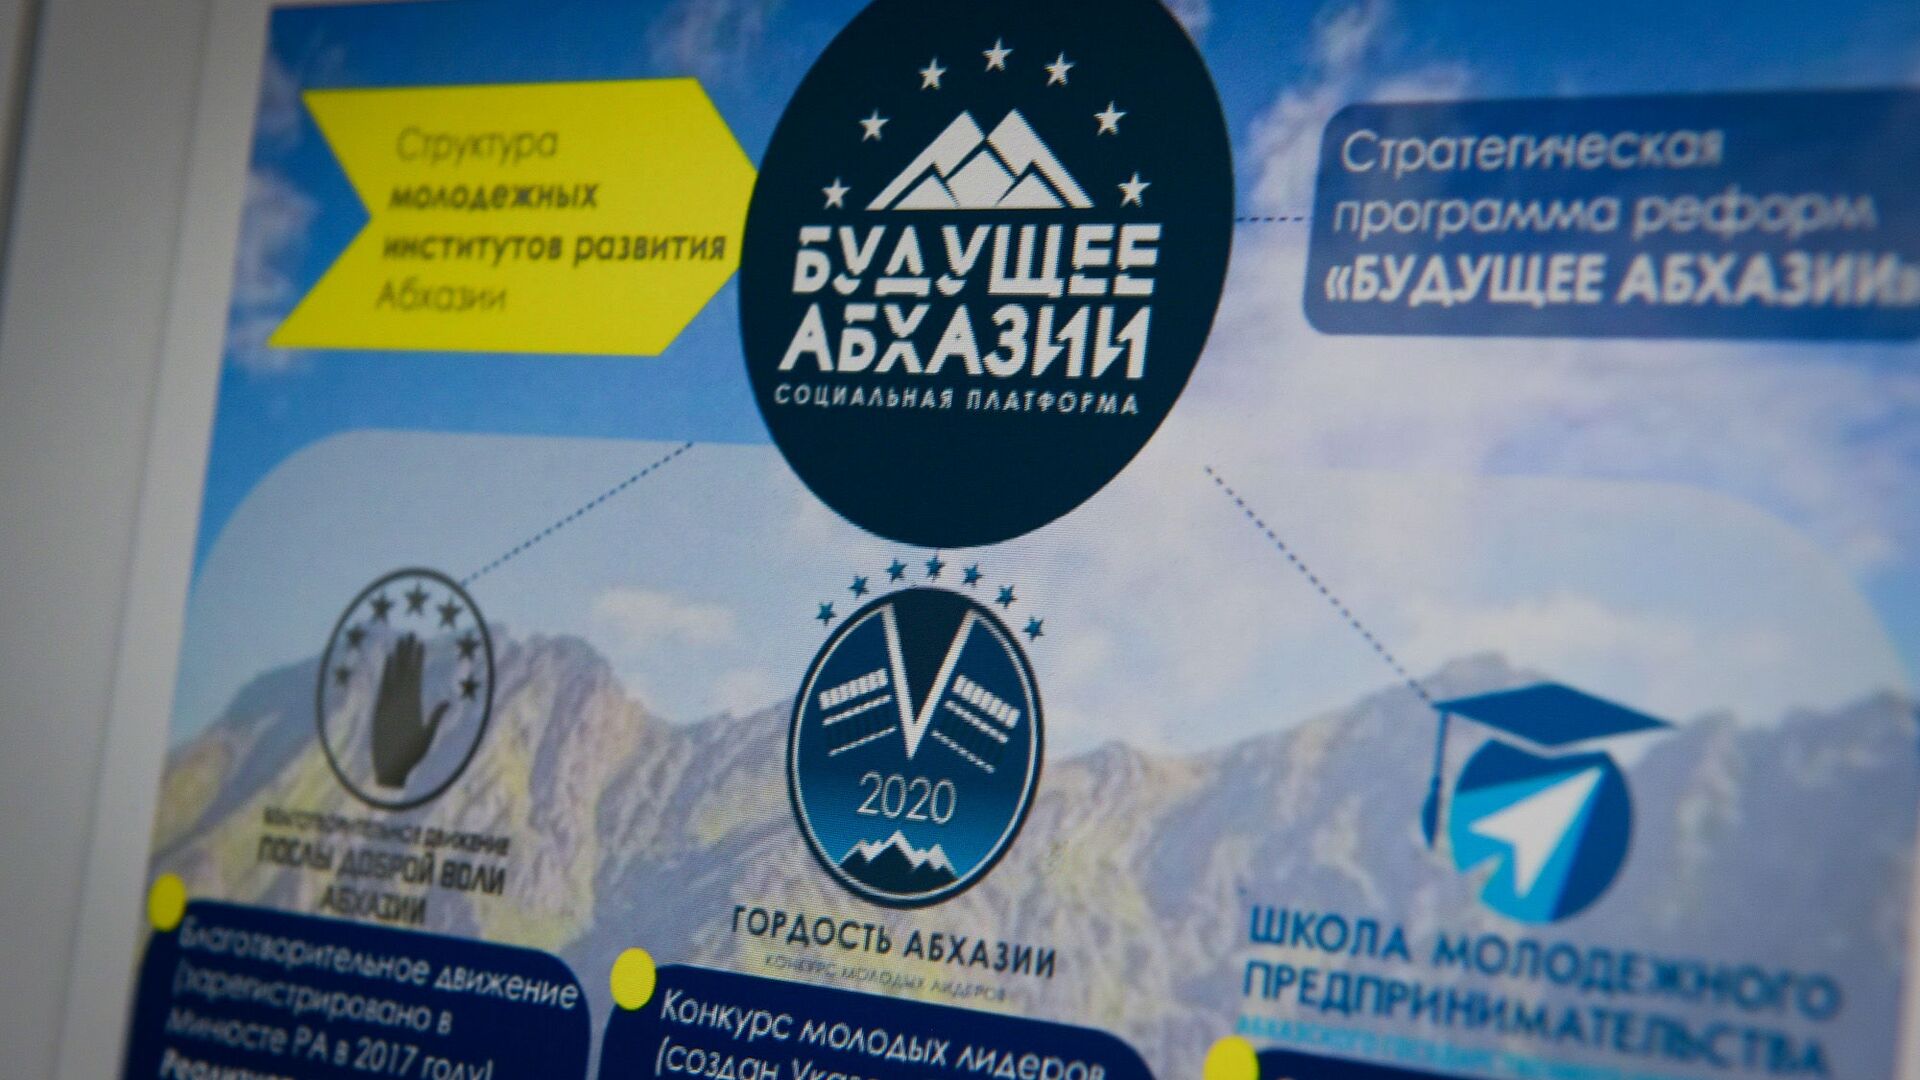 Программа реформ Будущее Абхазии была разработана финалистами конкурса Гордость Абхазии - Sputnik Аҧсны, 1920, 28.05.2021